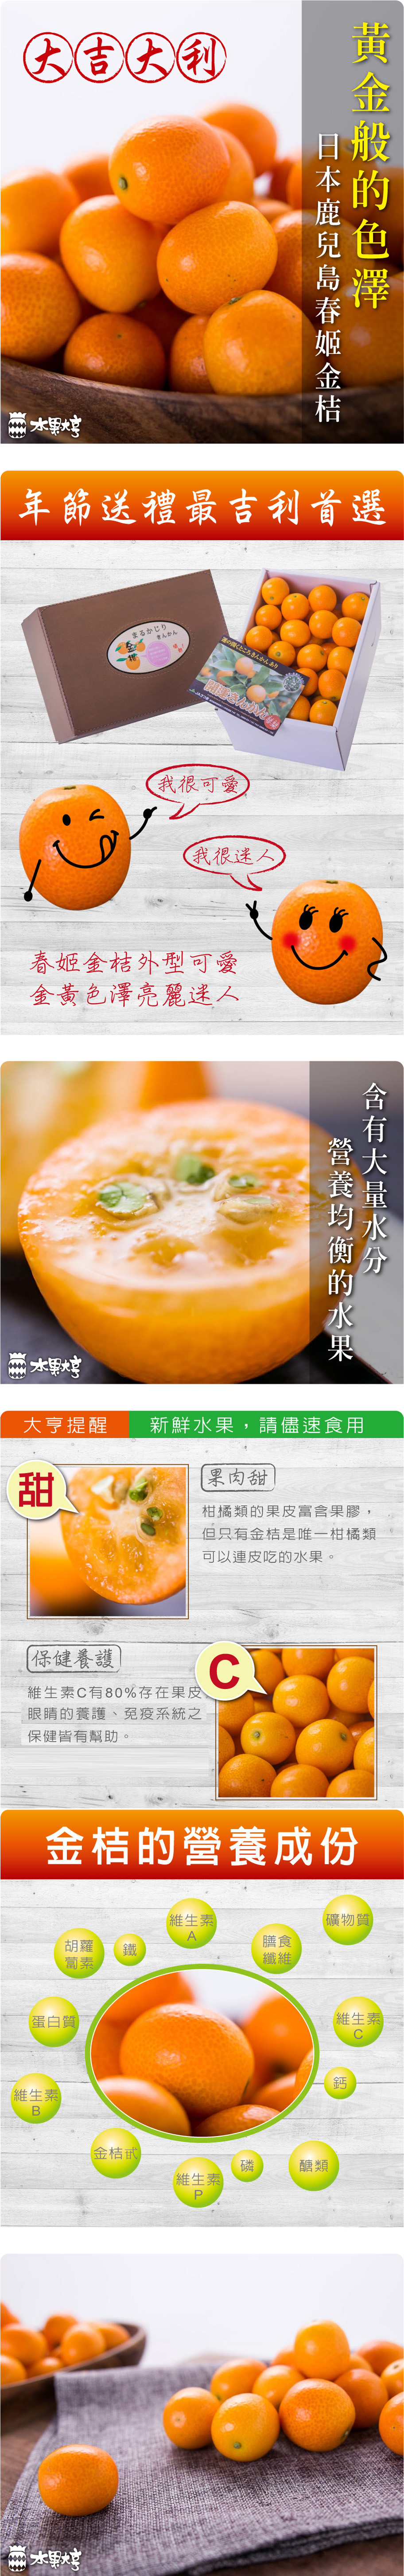 水果大亨 日本春姬金桔禮盒